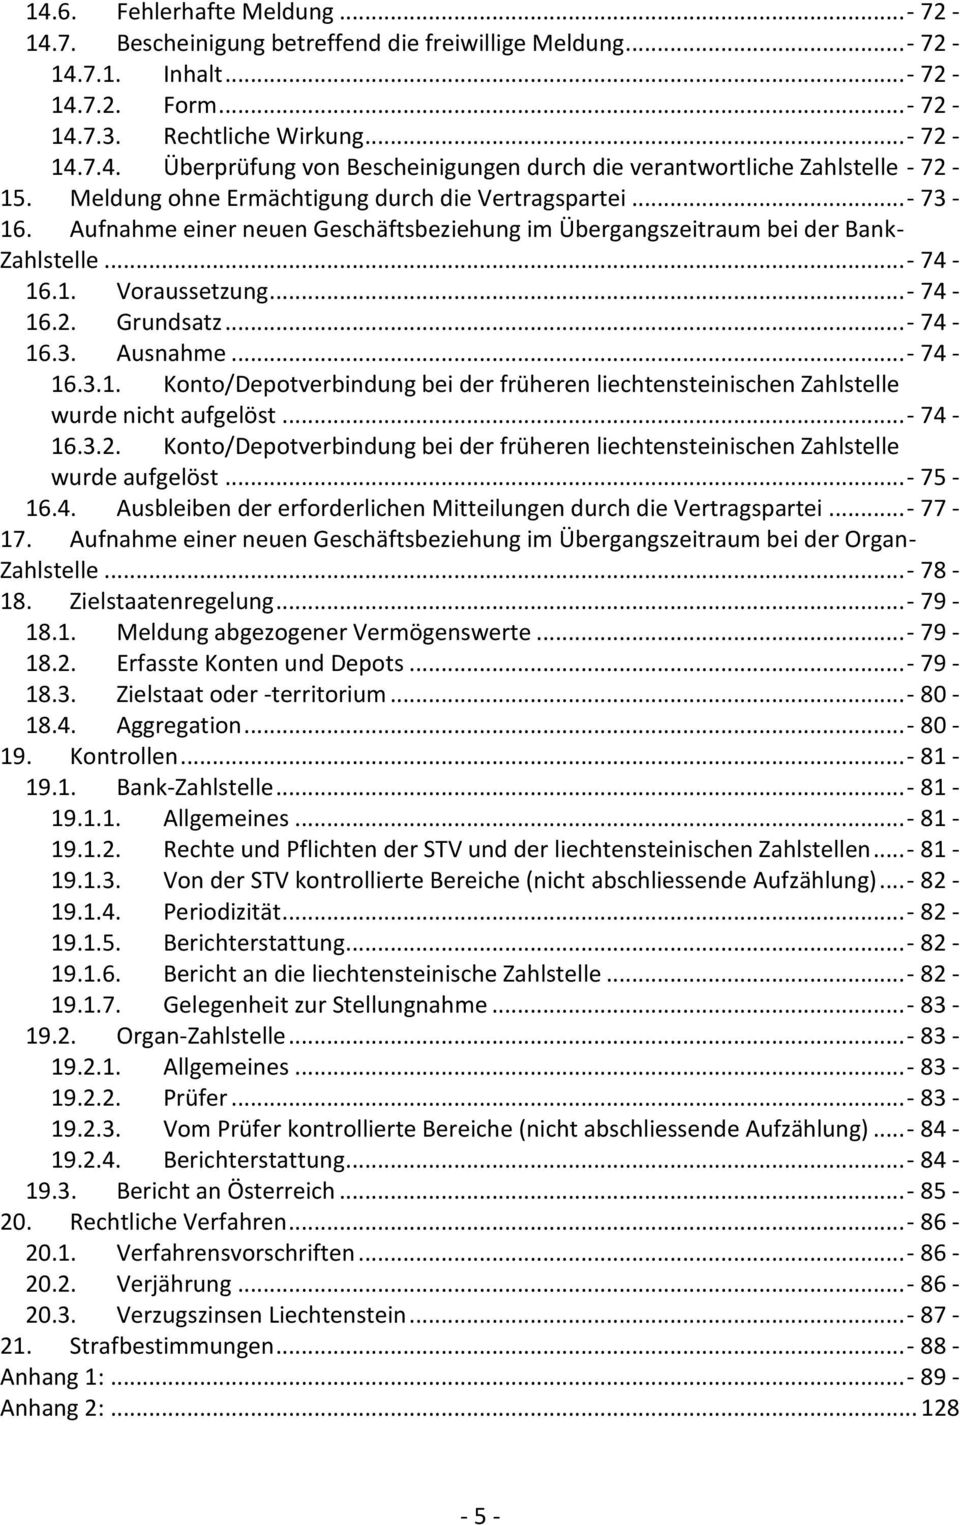 ..- 74-16.3. Ausnahme...- 74-16.3.1. Konto/Depotverbindung bei der früheren liechtensteinischen Zahlstelle wurde nicht aufgelöst...- 74-16.3.2.